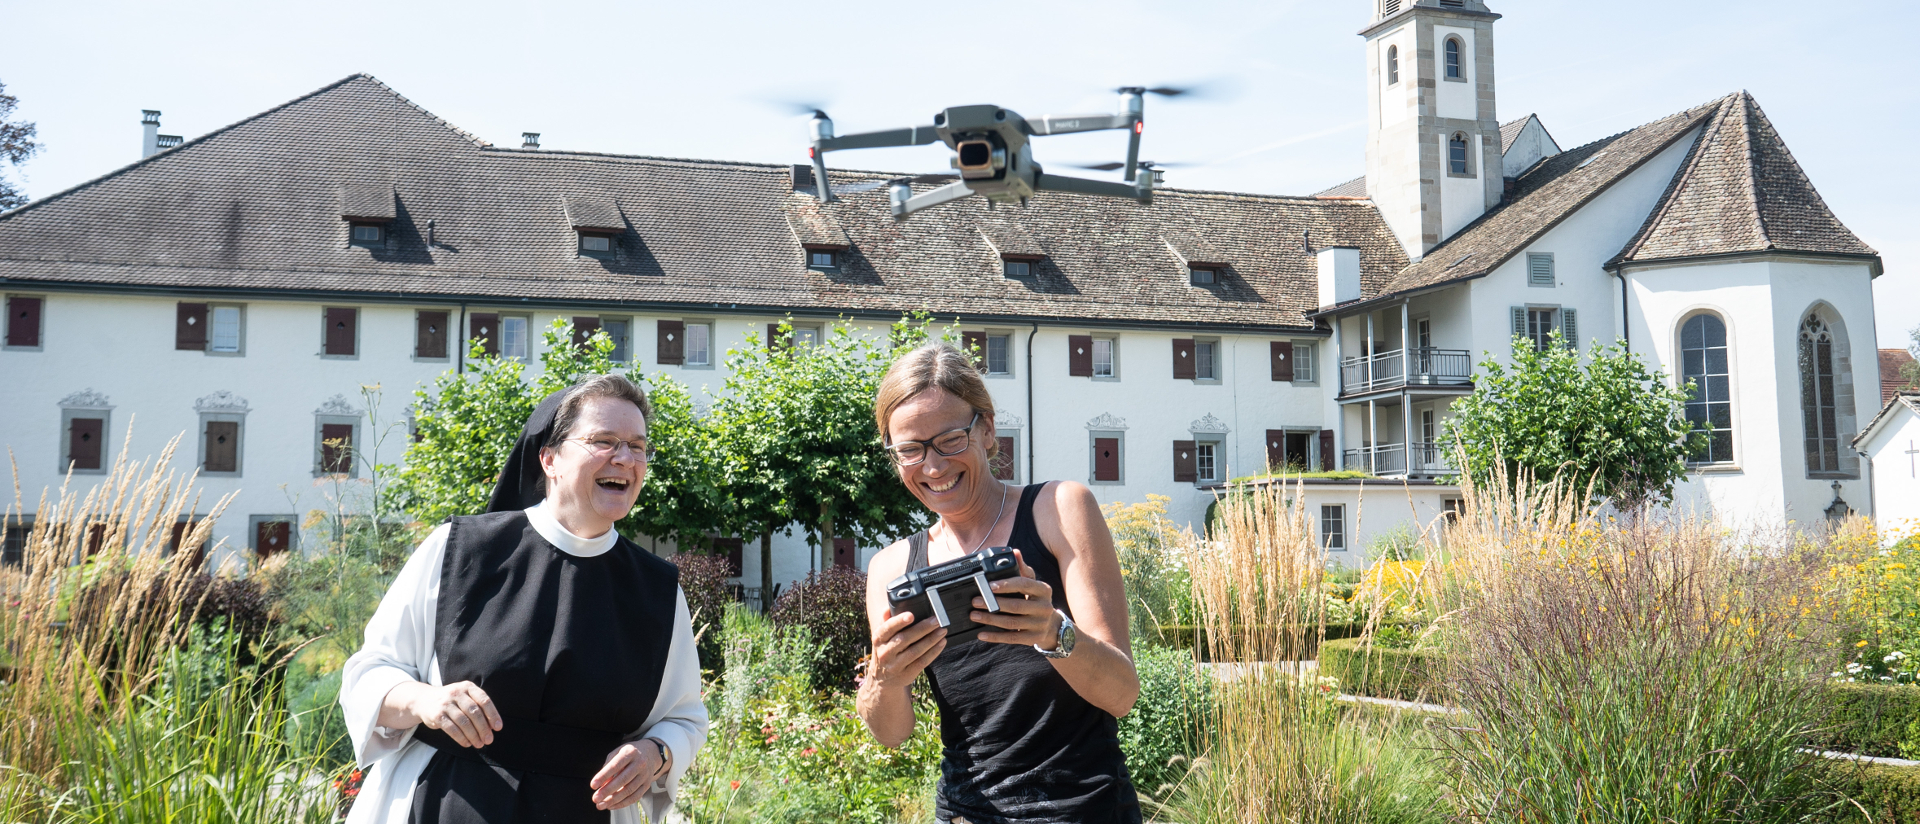 Schwester Andrea Fux, die Leiterin des Mädcheninternats der Zisterzienserinnen-Abtei Mariazell Wurmsbach, und die Videografin Dolores Rupa filmen mit einer Drohne für ihr Video-Projekt "Sie fragen - wir antworten" im Garten des Klosters.